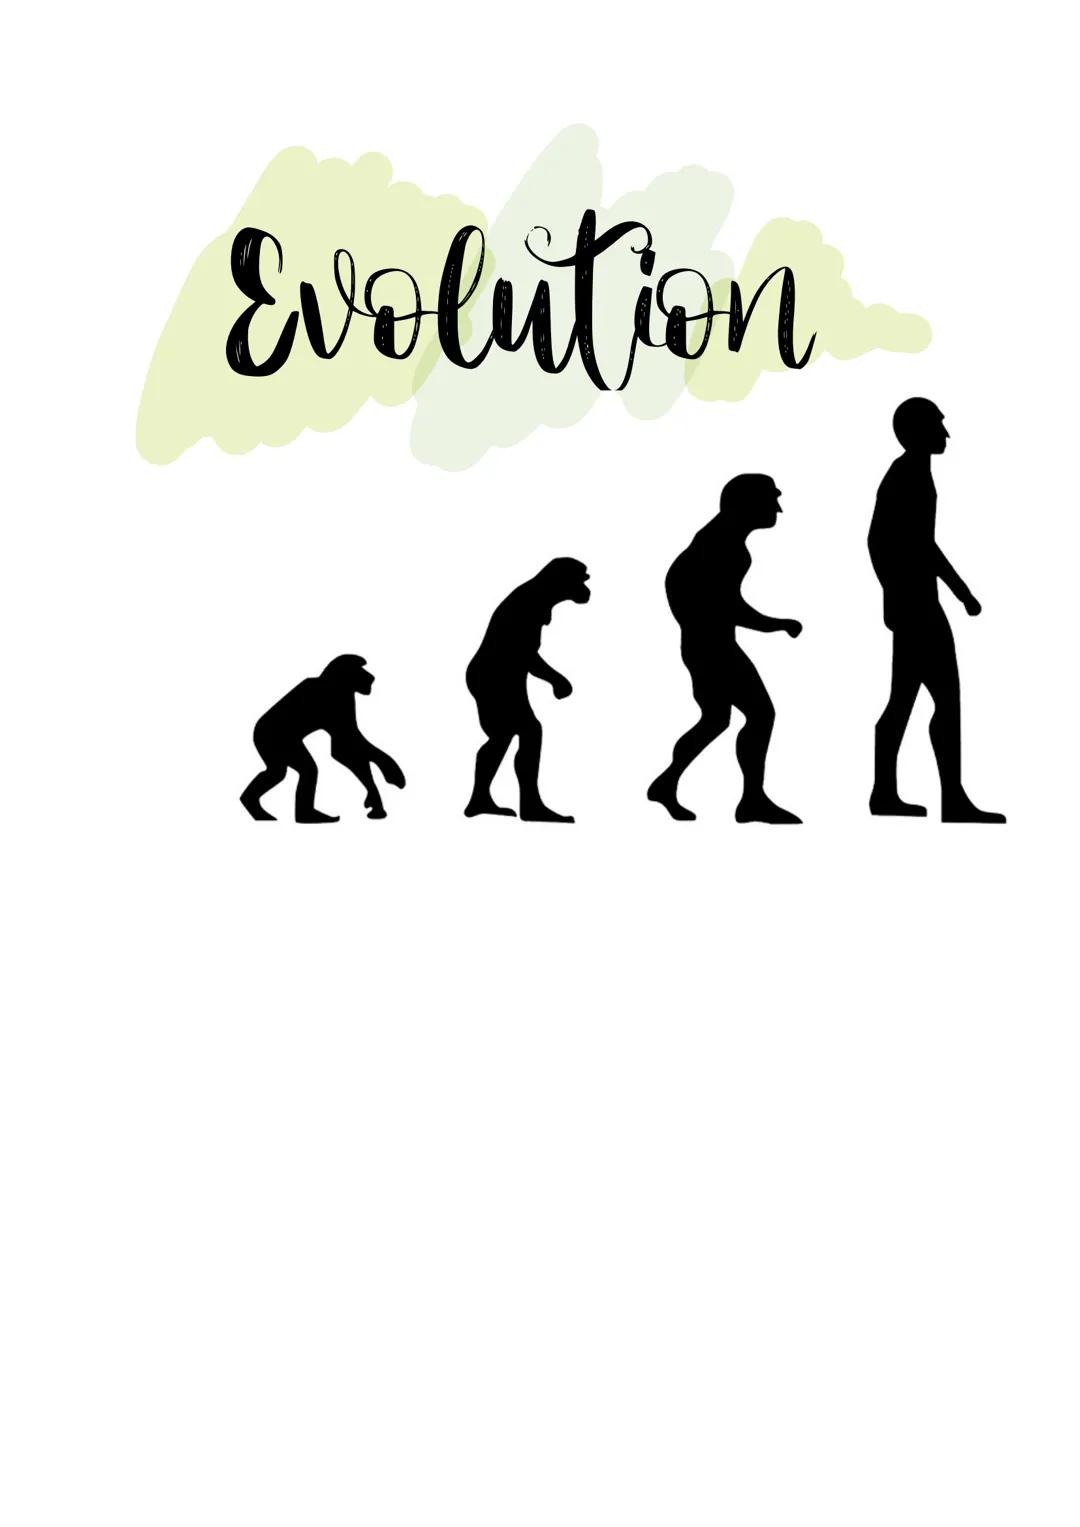 Evolution
$ Evolution
Beschäftigung mit allen Prozessen der Entstehung, Umwandlung und
Weiterentwicklung des Lebens auf der Erde, durch die 